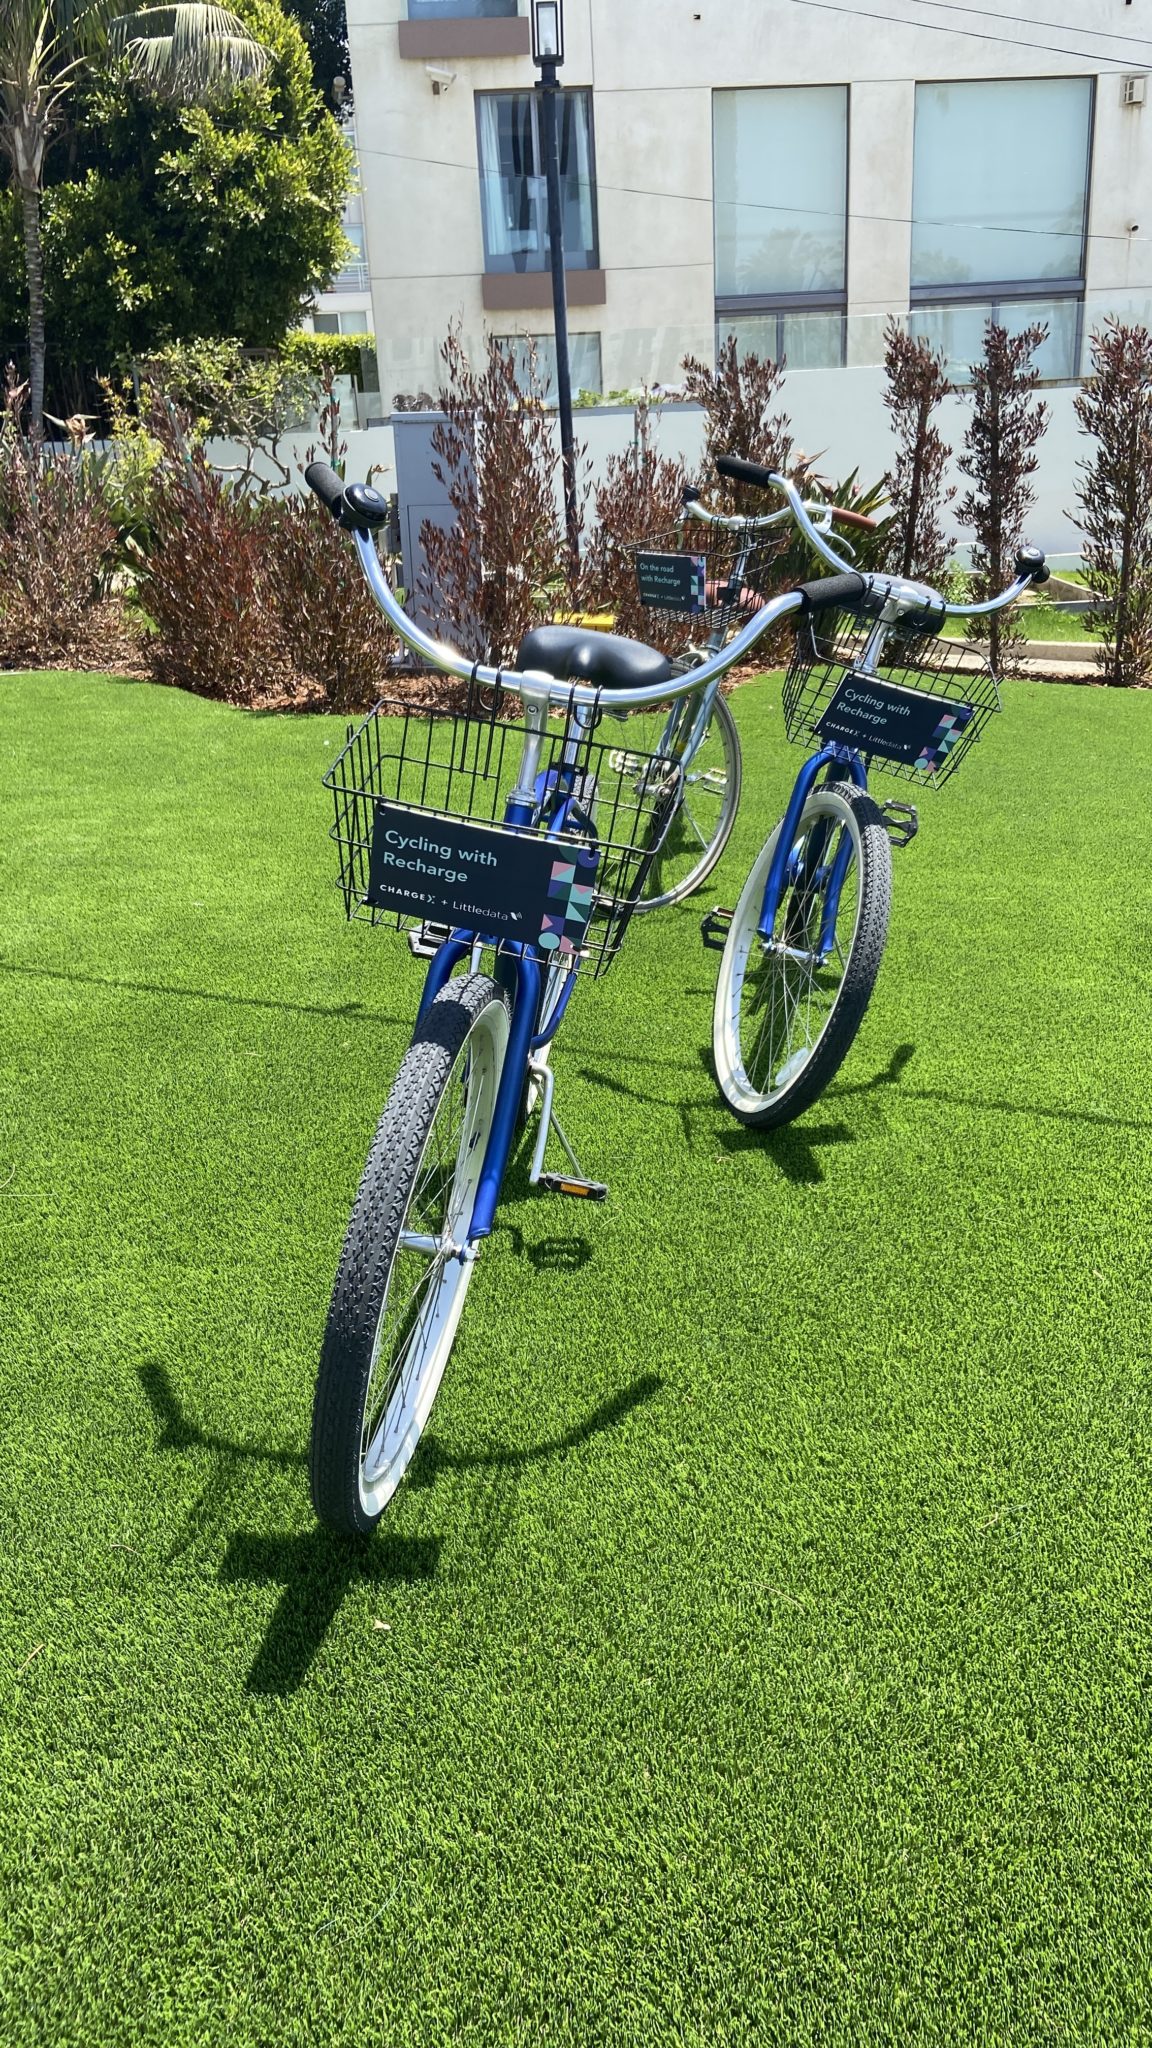 Deux vélos bleus avec la marque ChargeX sur leurs paniers avant debout avec leurs béquilles sur de l'herbe prêtes à être utilisées par les participants.